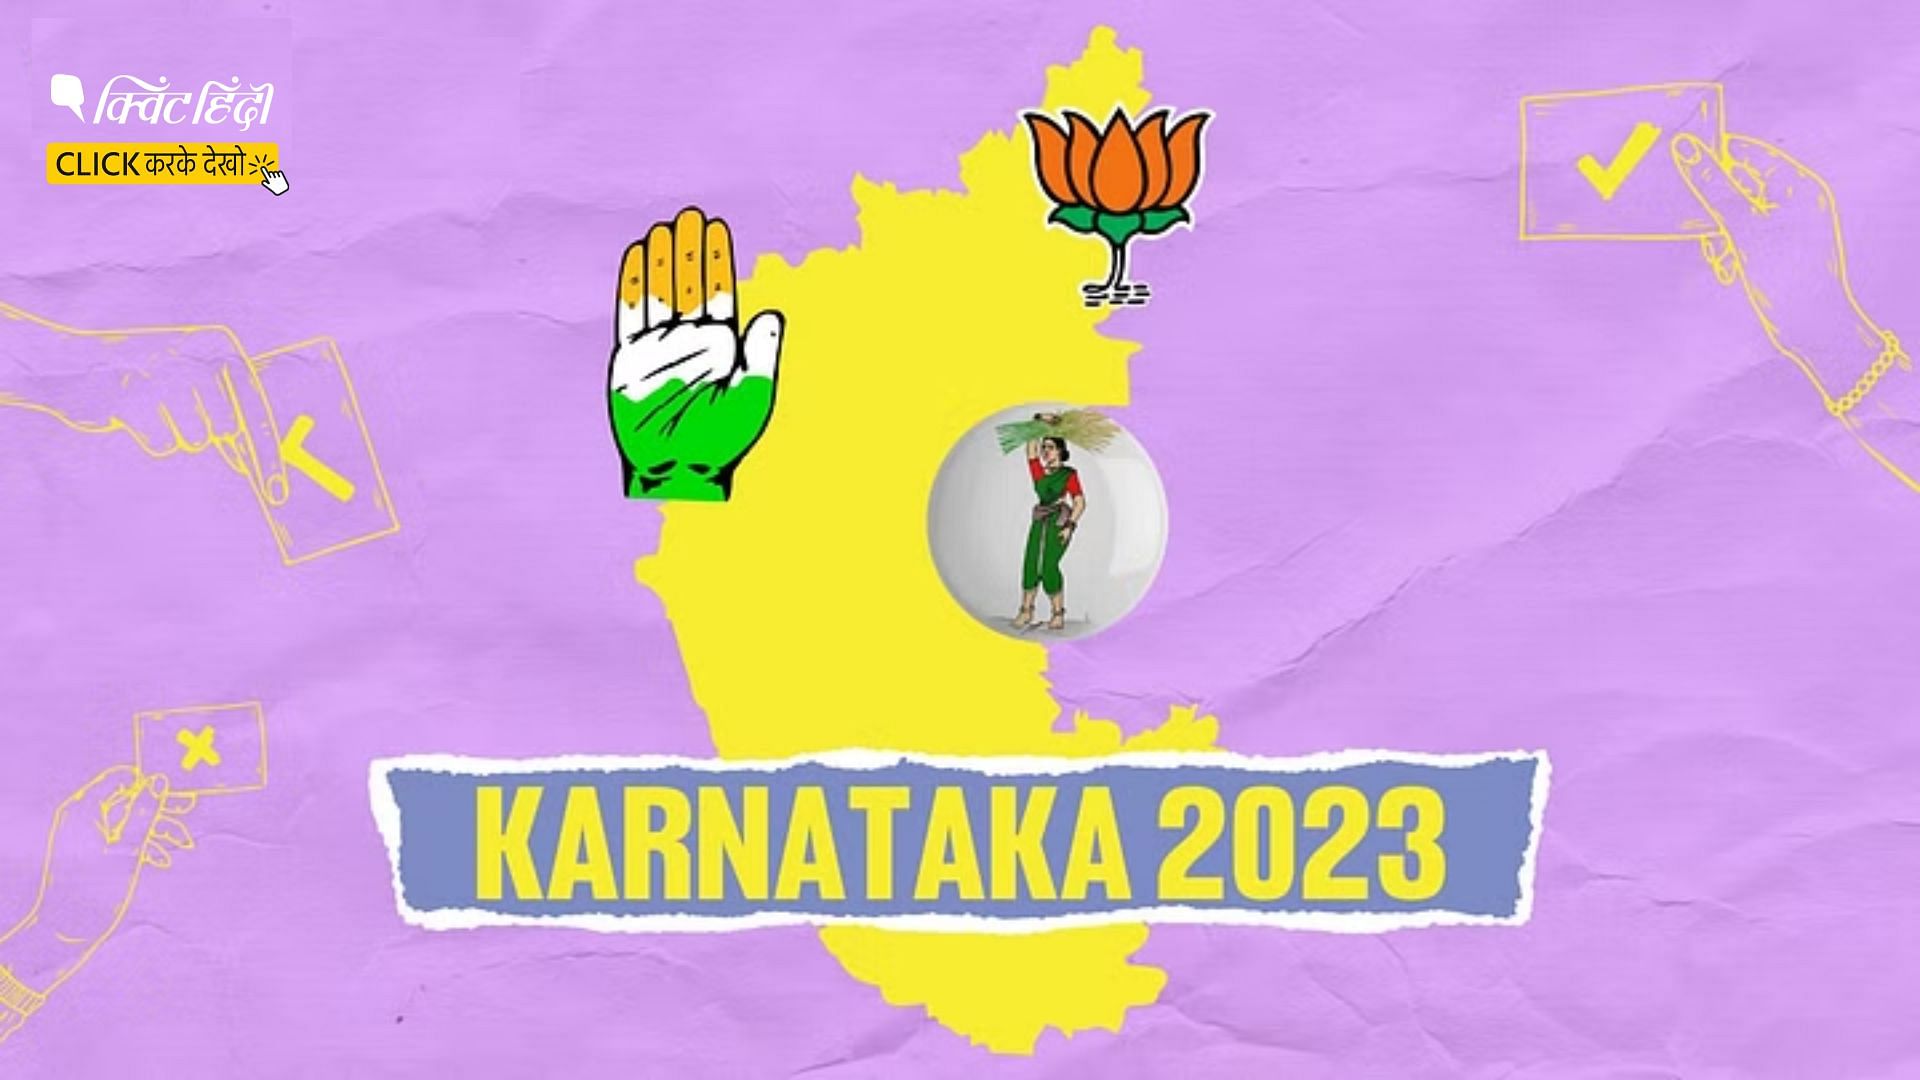 <div class="paragraphs"><p>Karnataka Elections 2023</p></div>